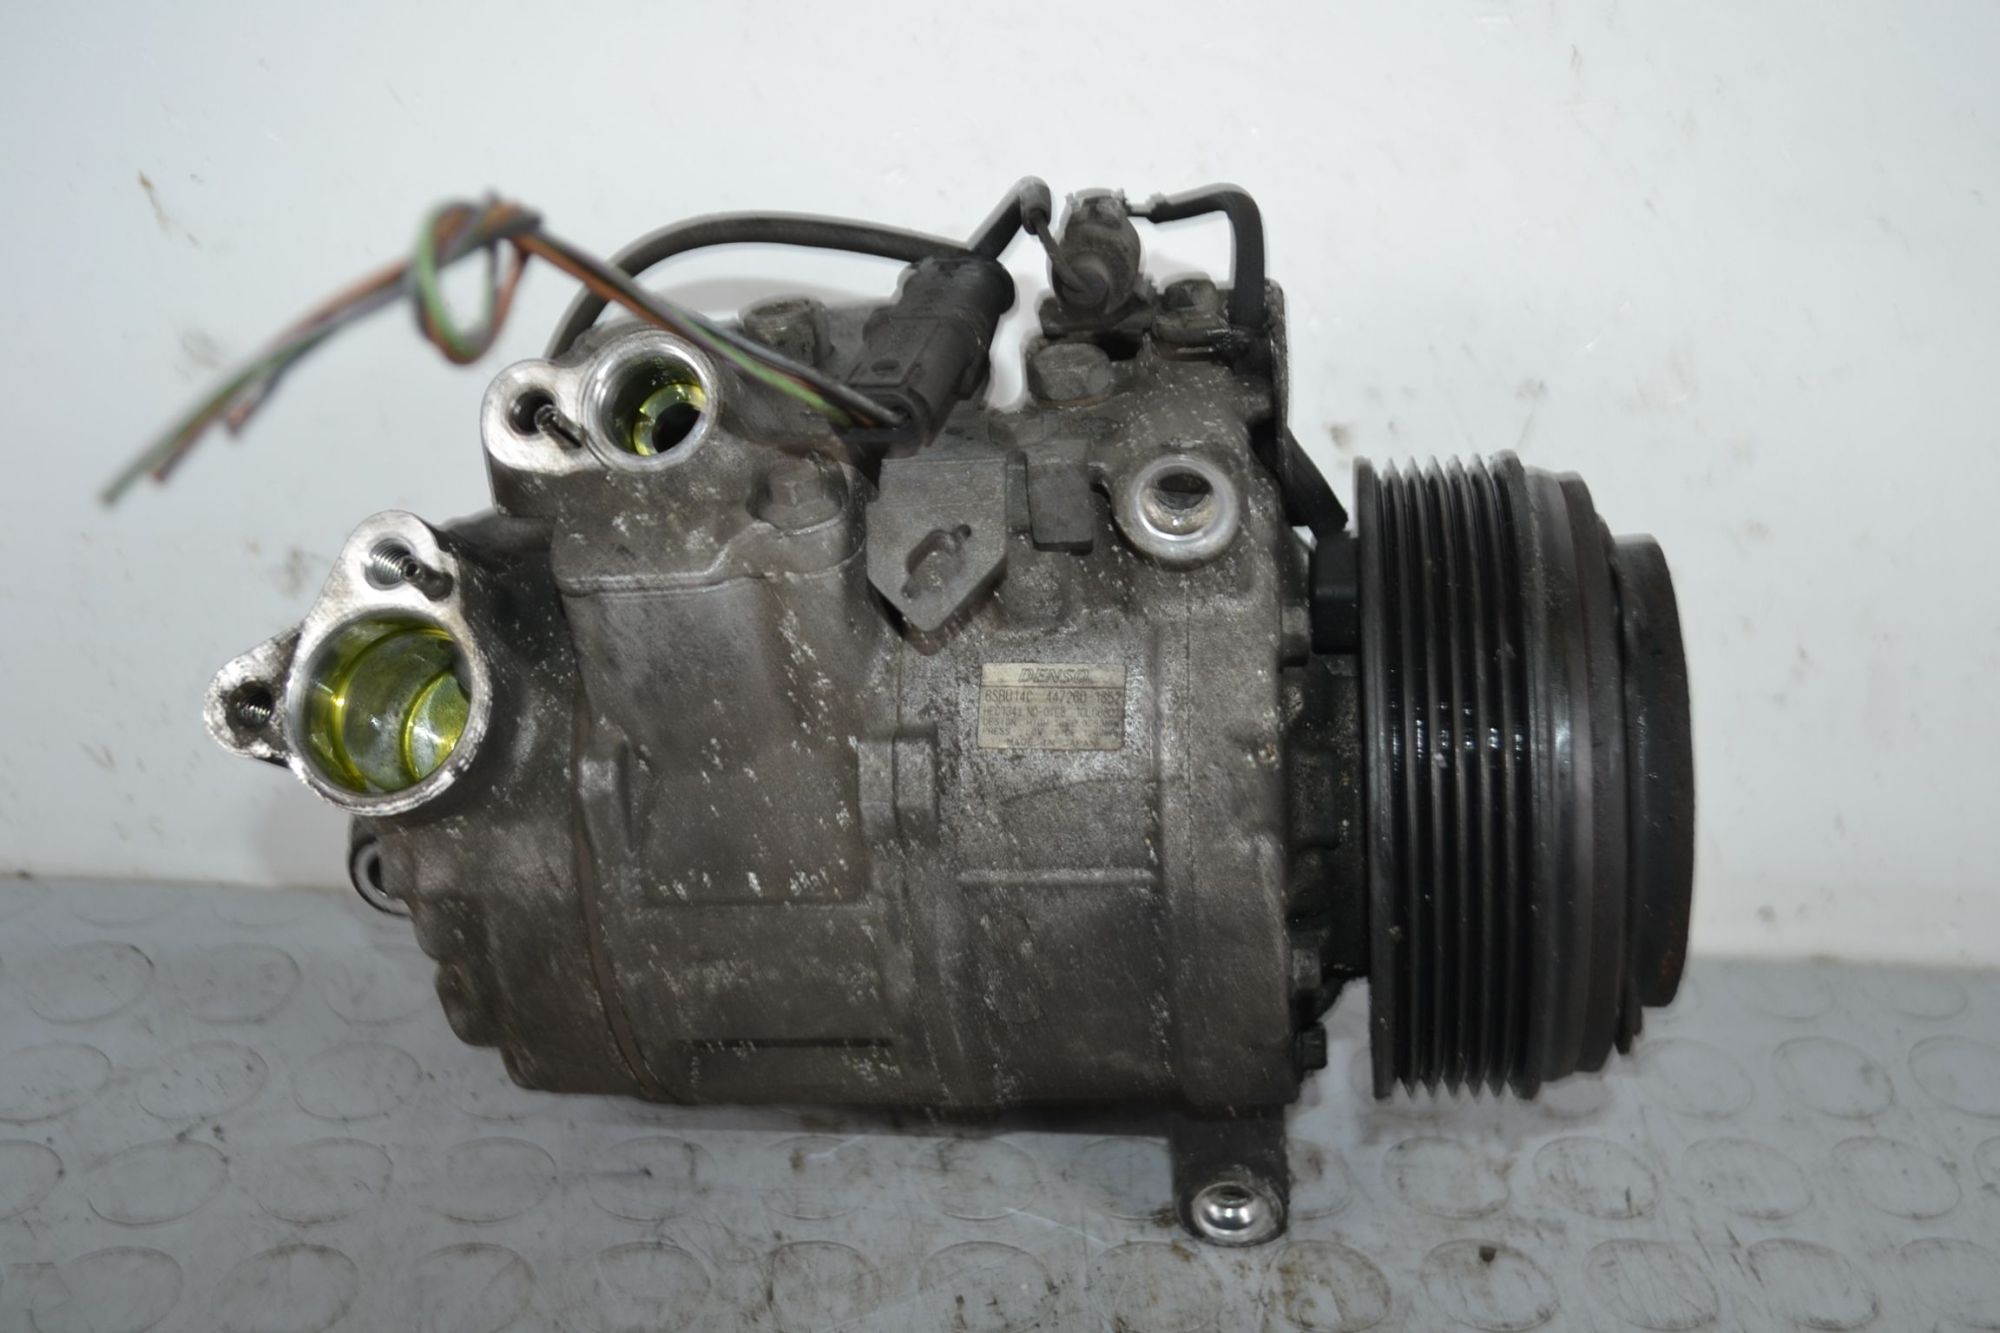 Compressore AC Bmw Serie 3 E91 Dal 2008 al 2010 Cod 447260-1852  1702886420833